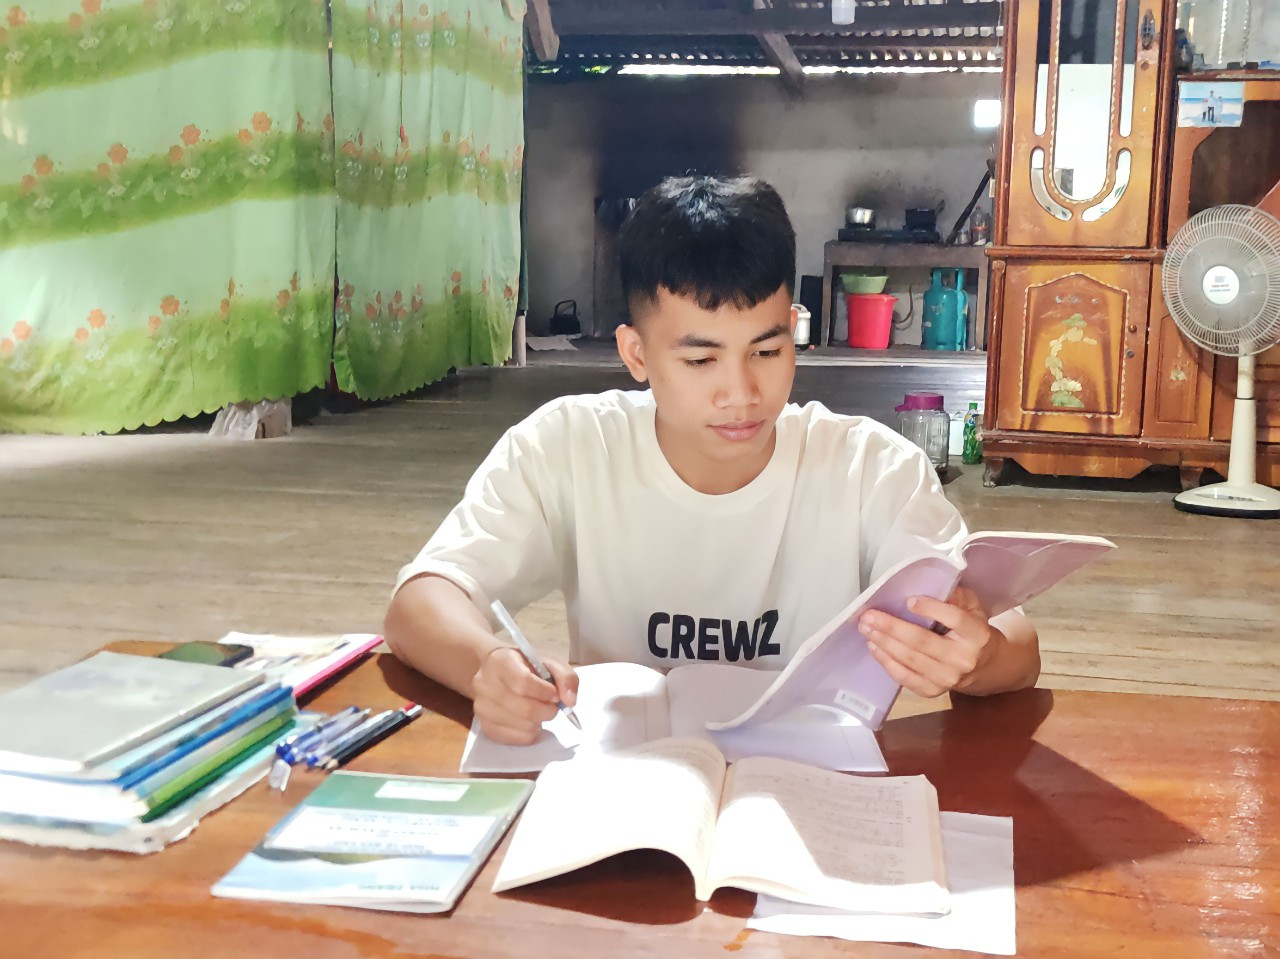 bna_ảnh. Trong ngôi nhà sàn nhỏ, ngoài giờ đi phụ hồ giúp bố Tuấn vẫn có thói quen ôn lại bài để củng cố kiến thức..jpg